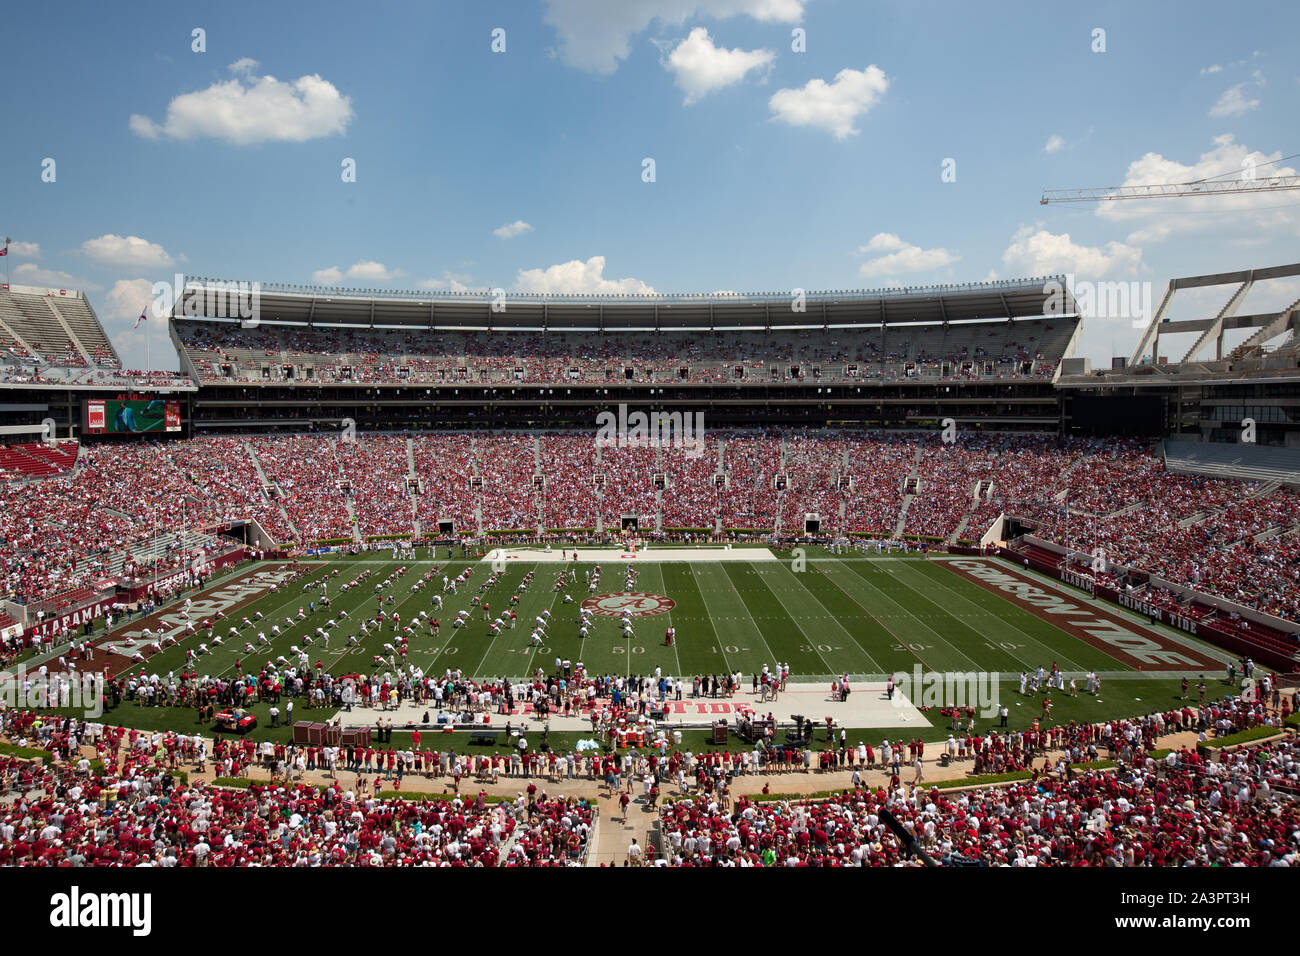 Est rempli avec des cris de fans, match de football de l'Université d'Alabama, Tuscaloosa, Alabama Banque D'Images